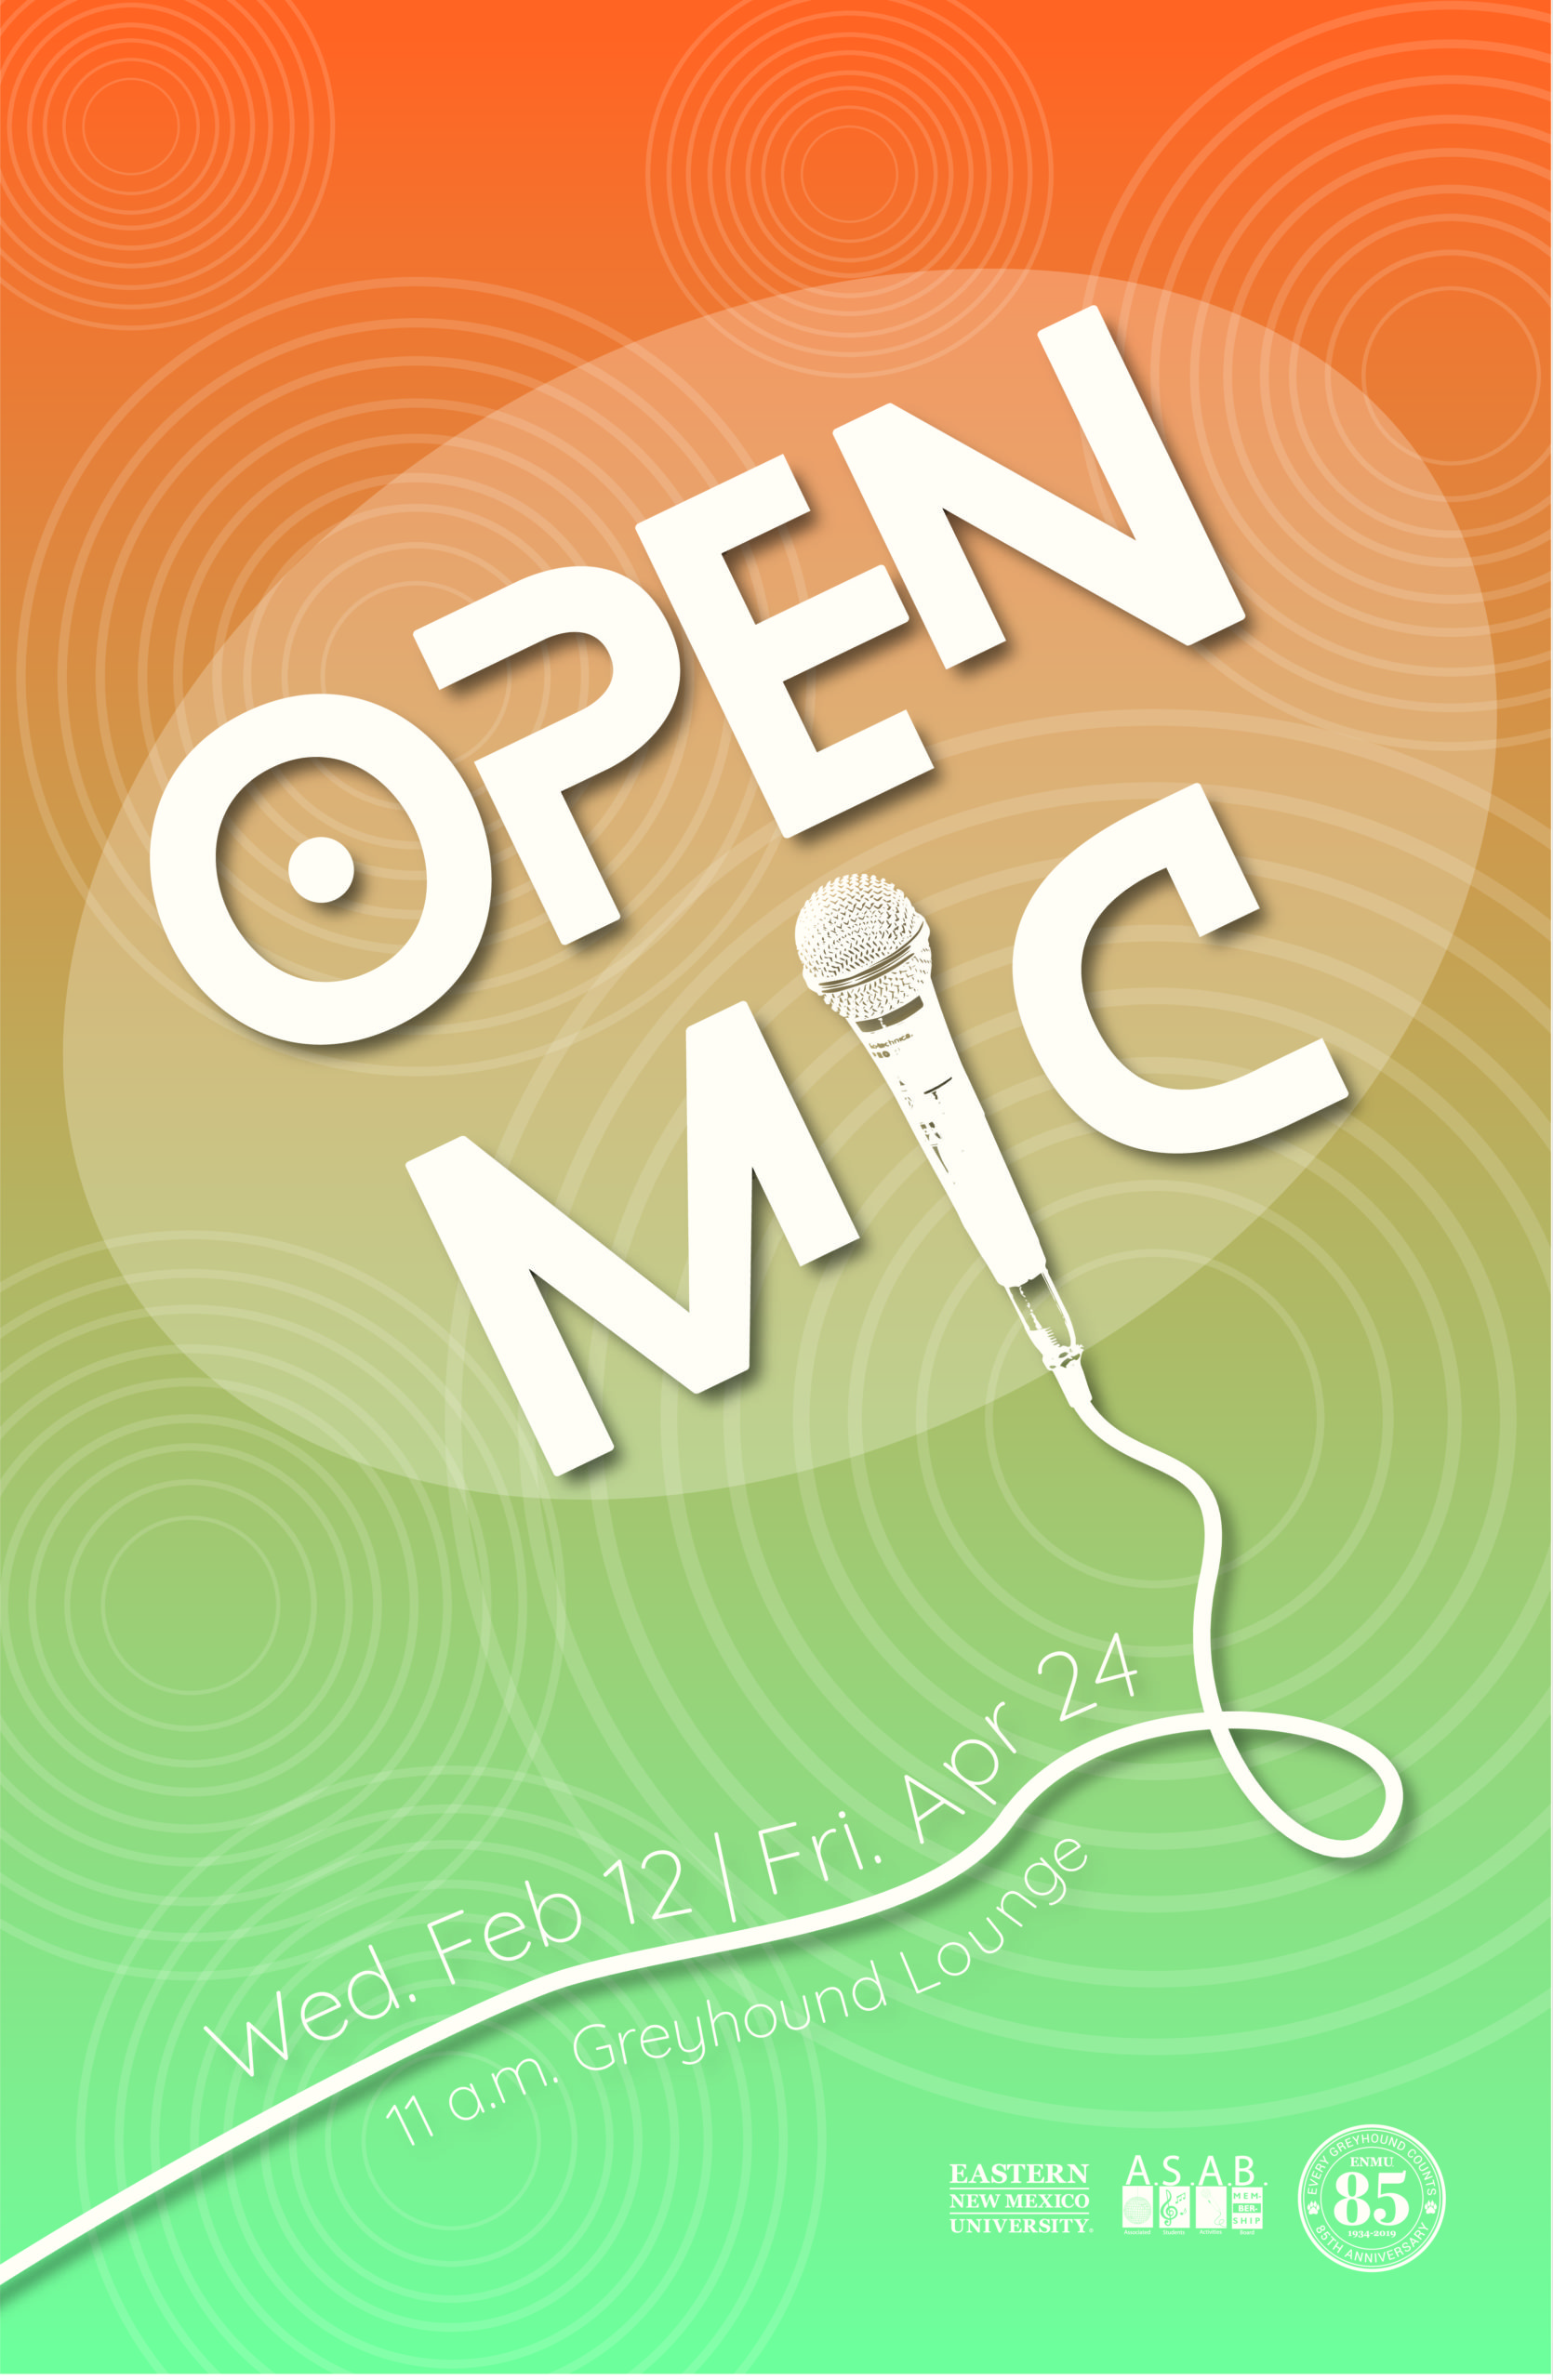 Open Mic Event Flyer – Feb. 12 & Apr. 24 – HoundBytes